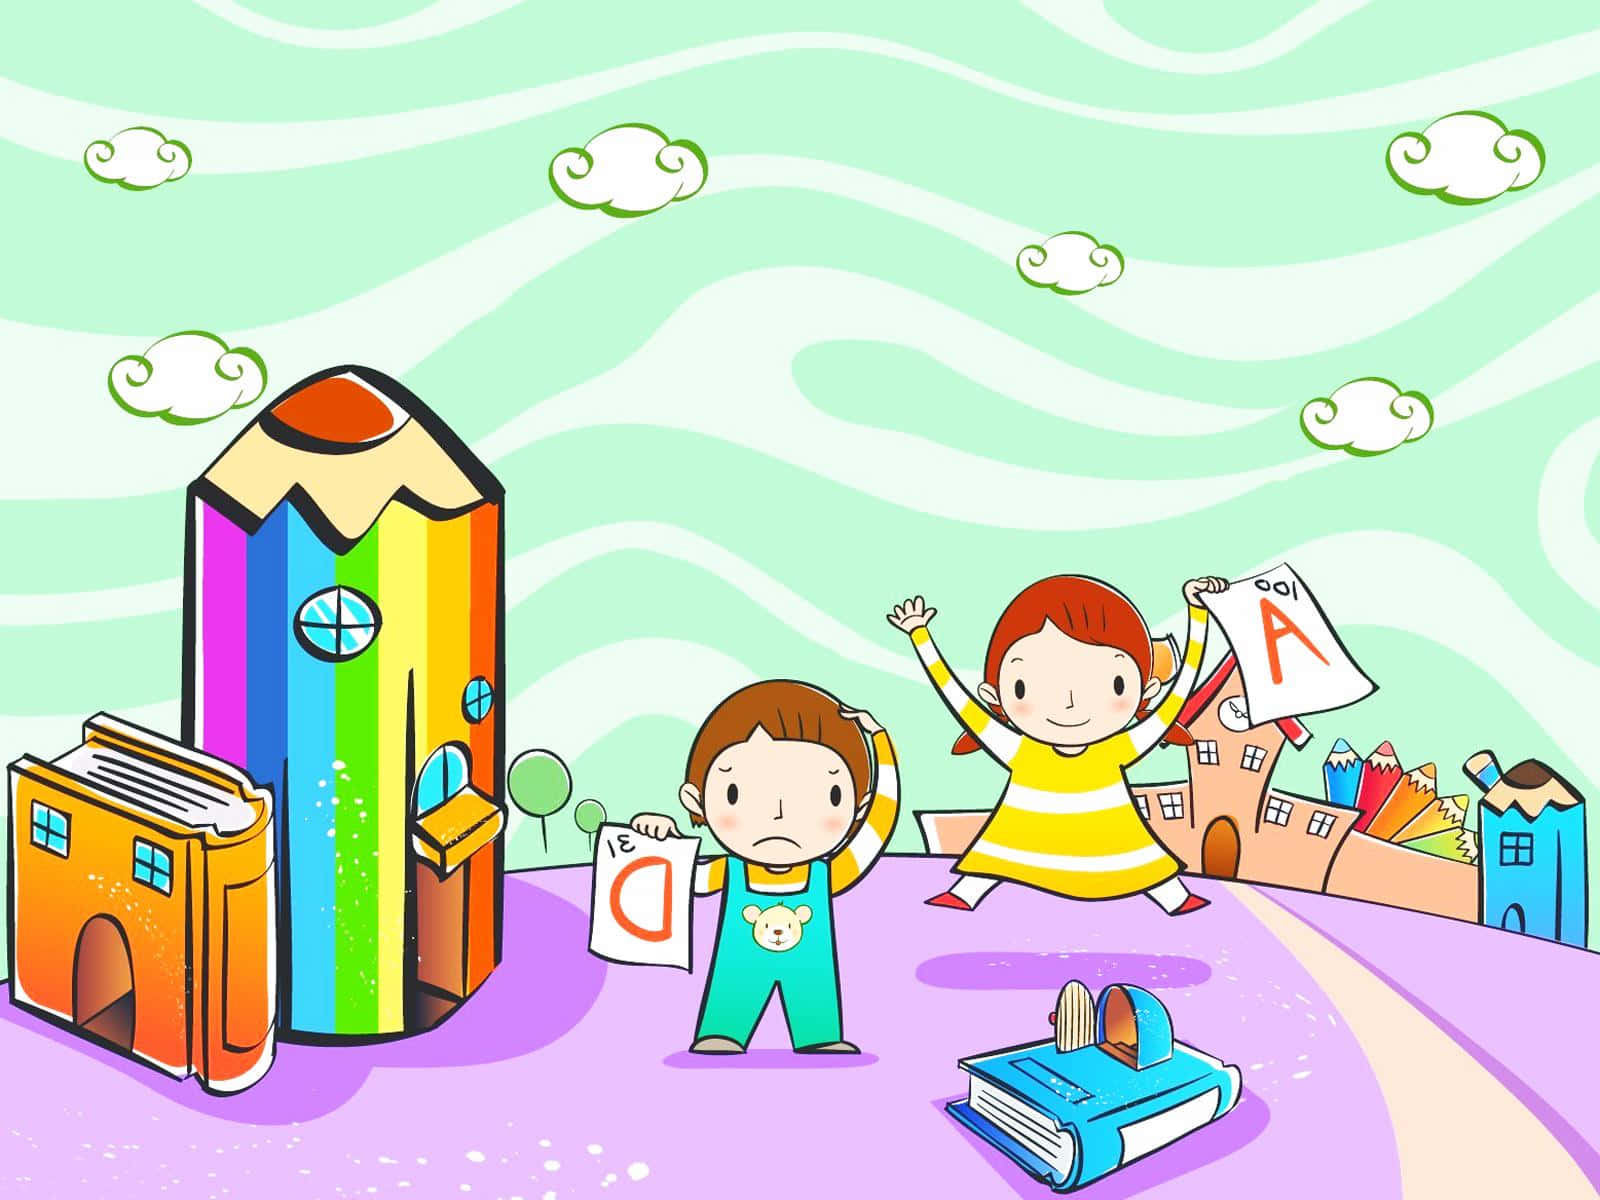 Einezeichentrickfigur Von Zwei Kindern, Die Mit Einem Stift Und Einem Buch Spielen.